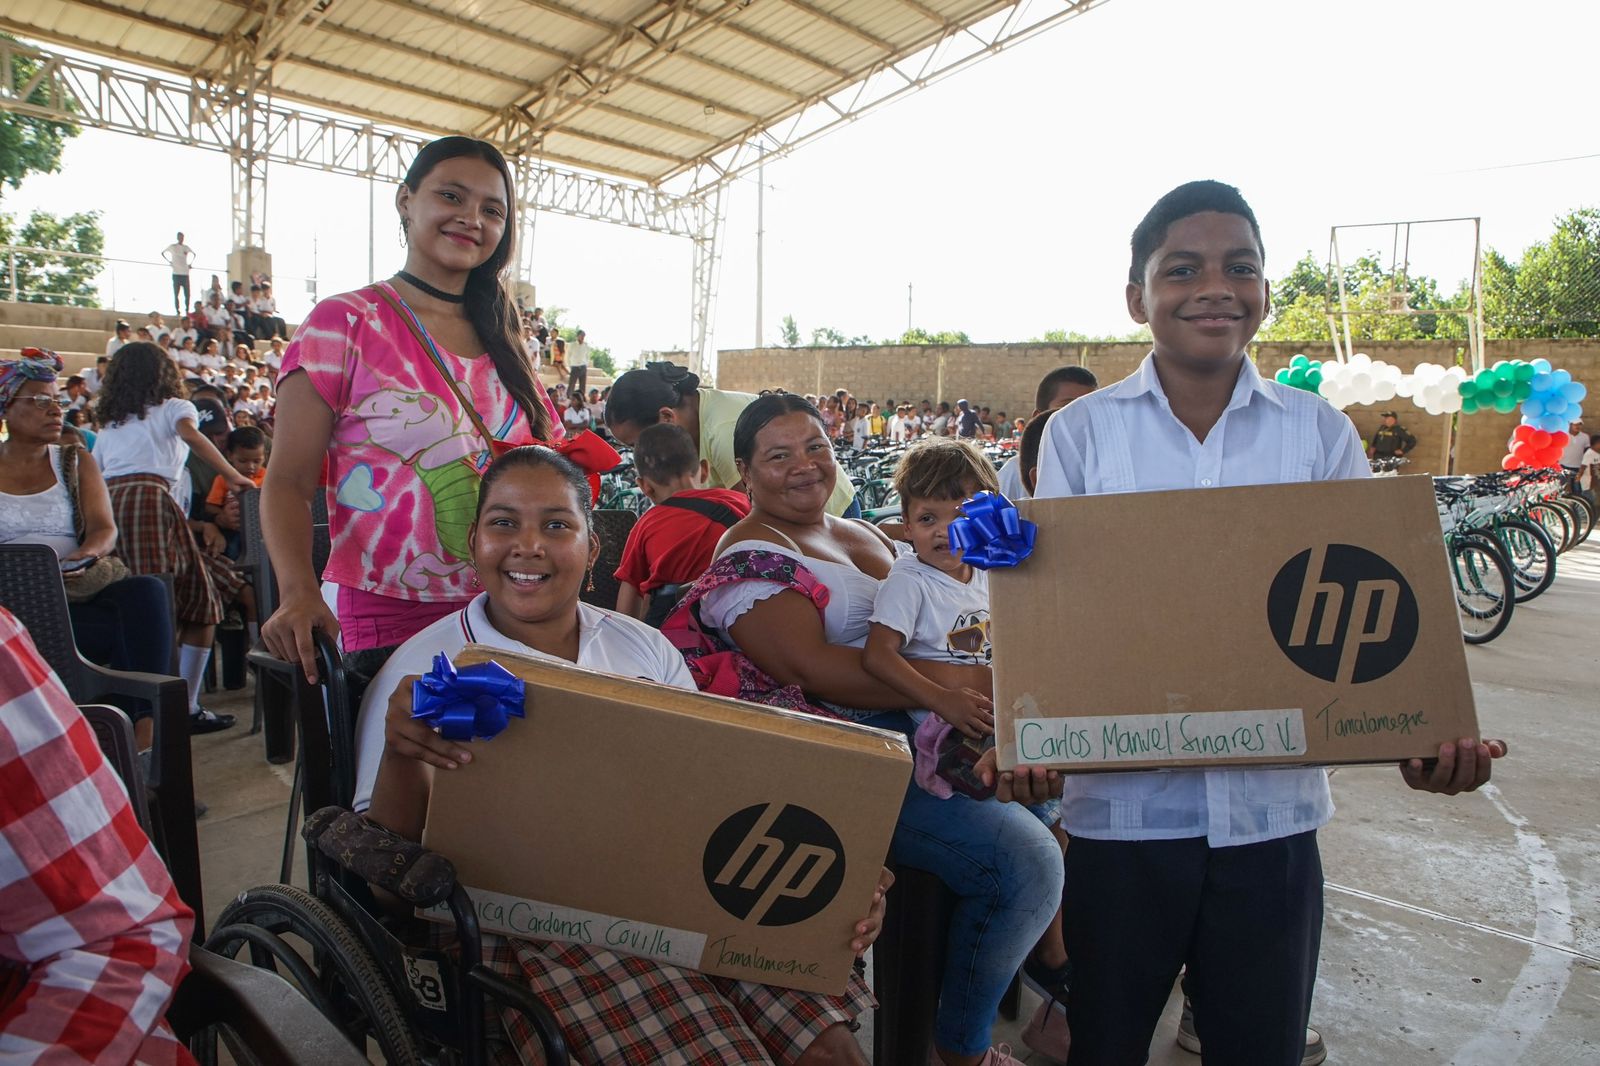 Con entrega de computadores y bicicletas, Gobierno del Cesar sigue fortaleciendo el proceso educativo en Tamalameque